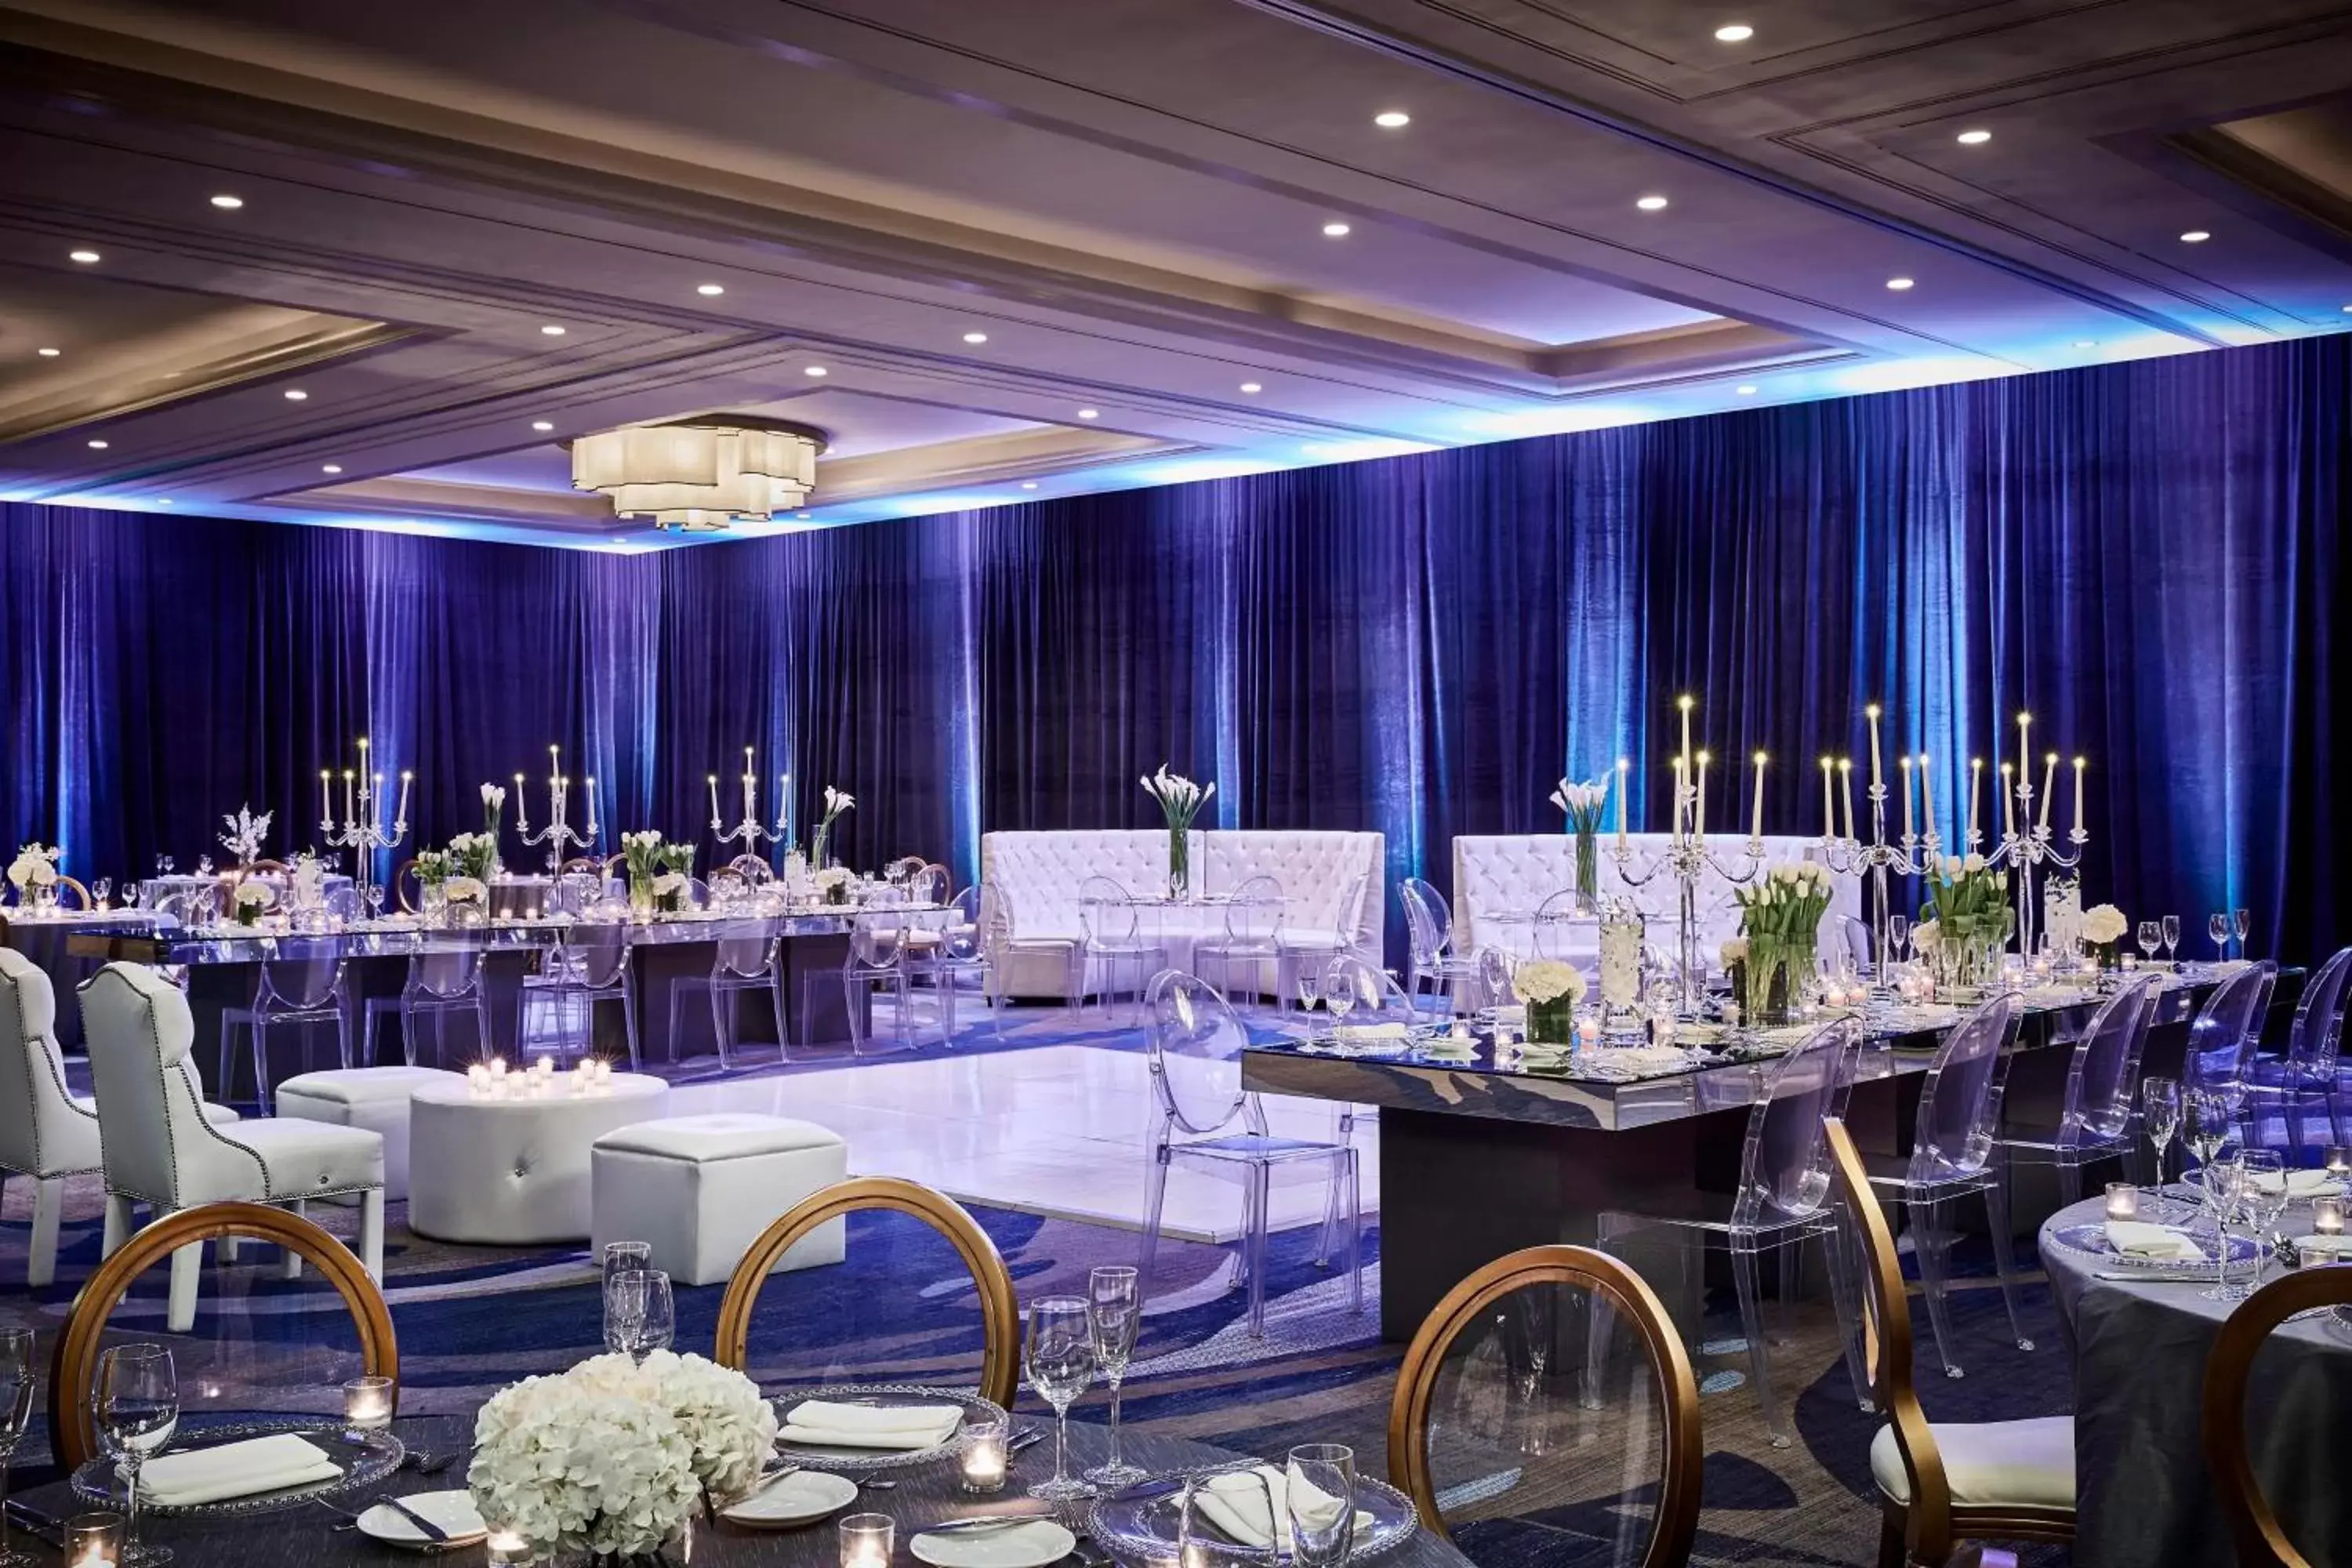 Banquet/Function facilities, Banquet Facilities in Marina del Rey Marriott